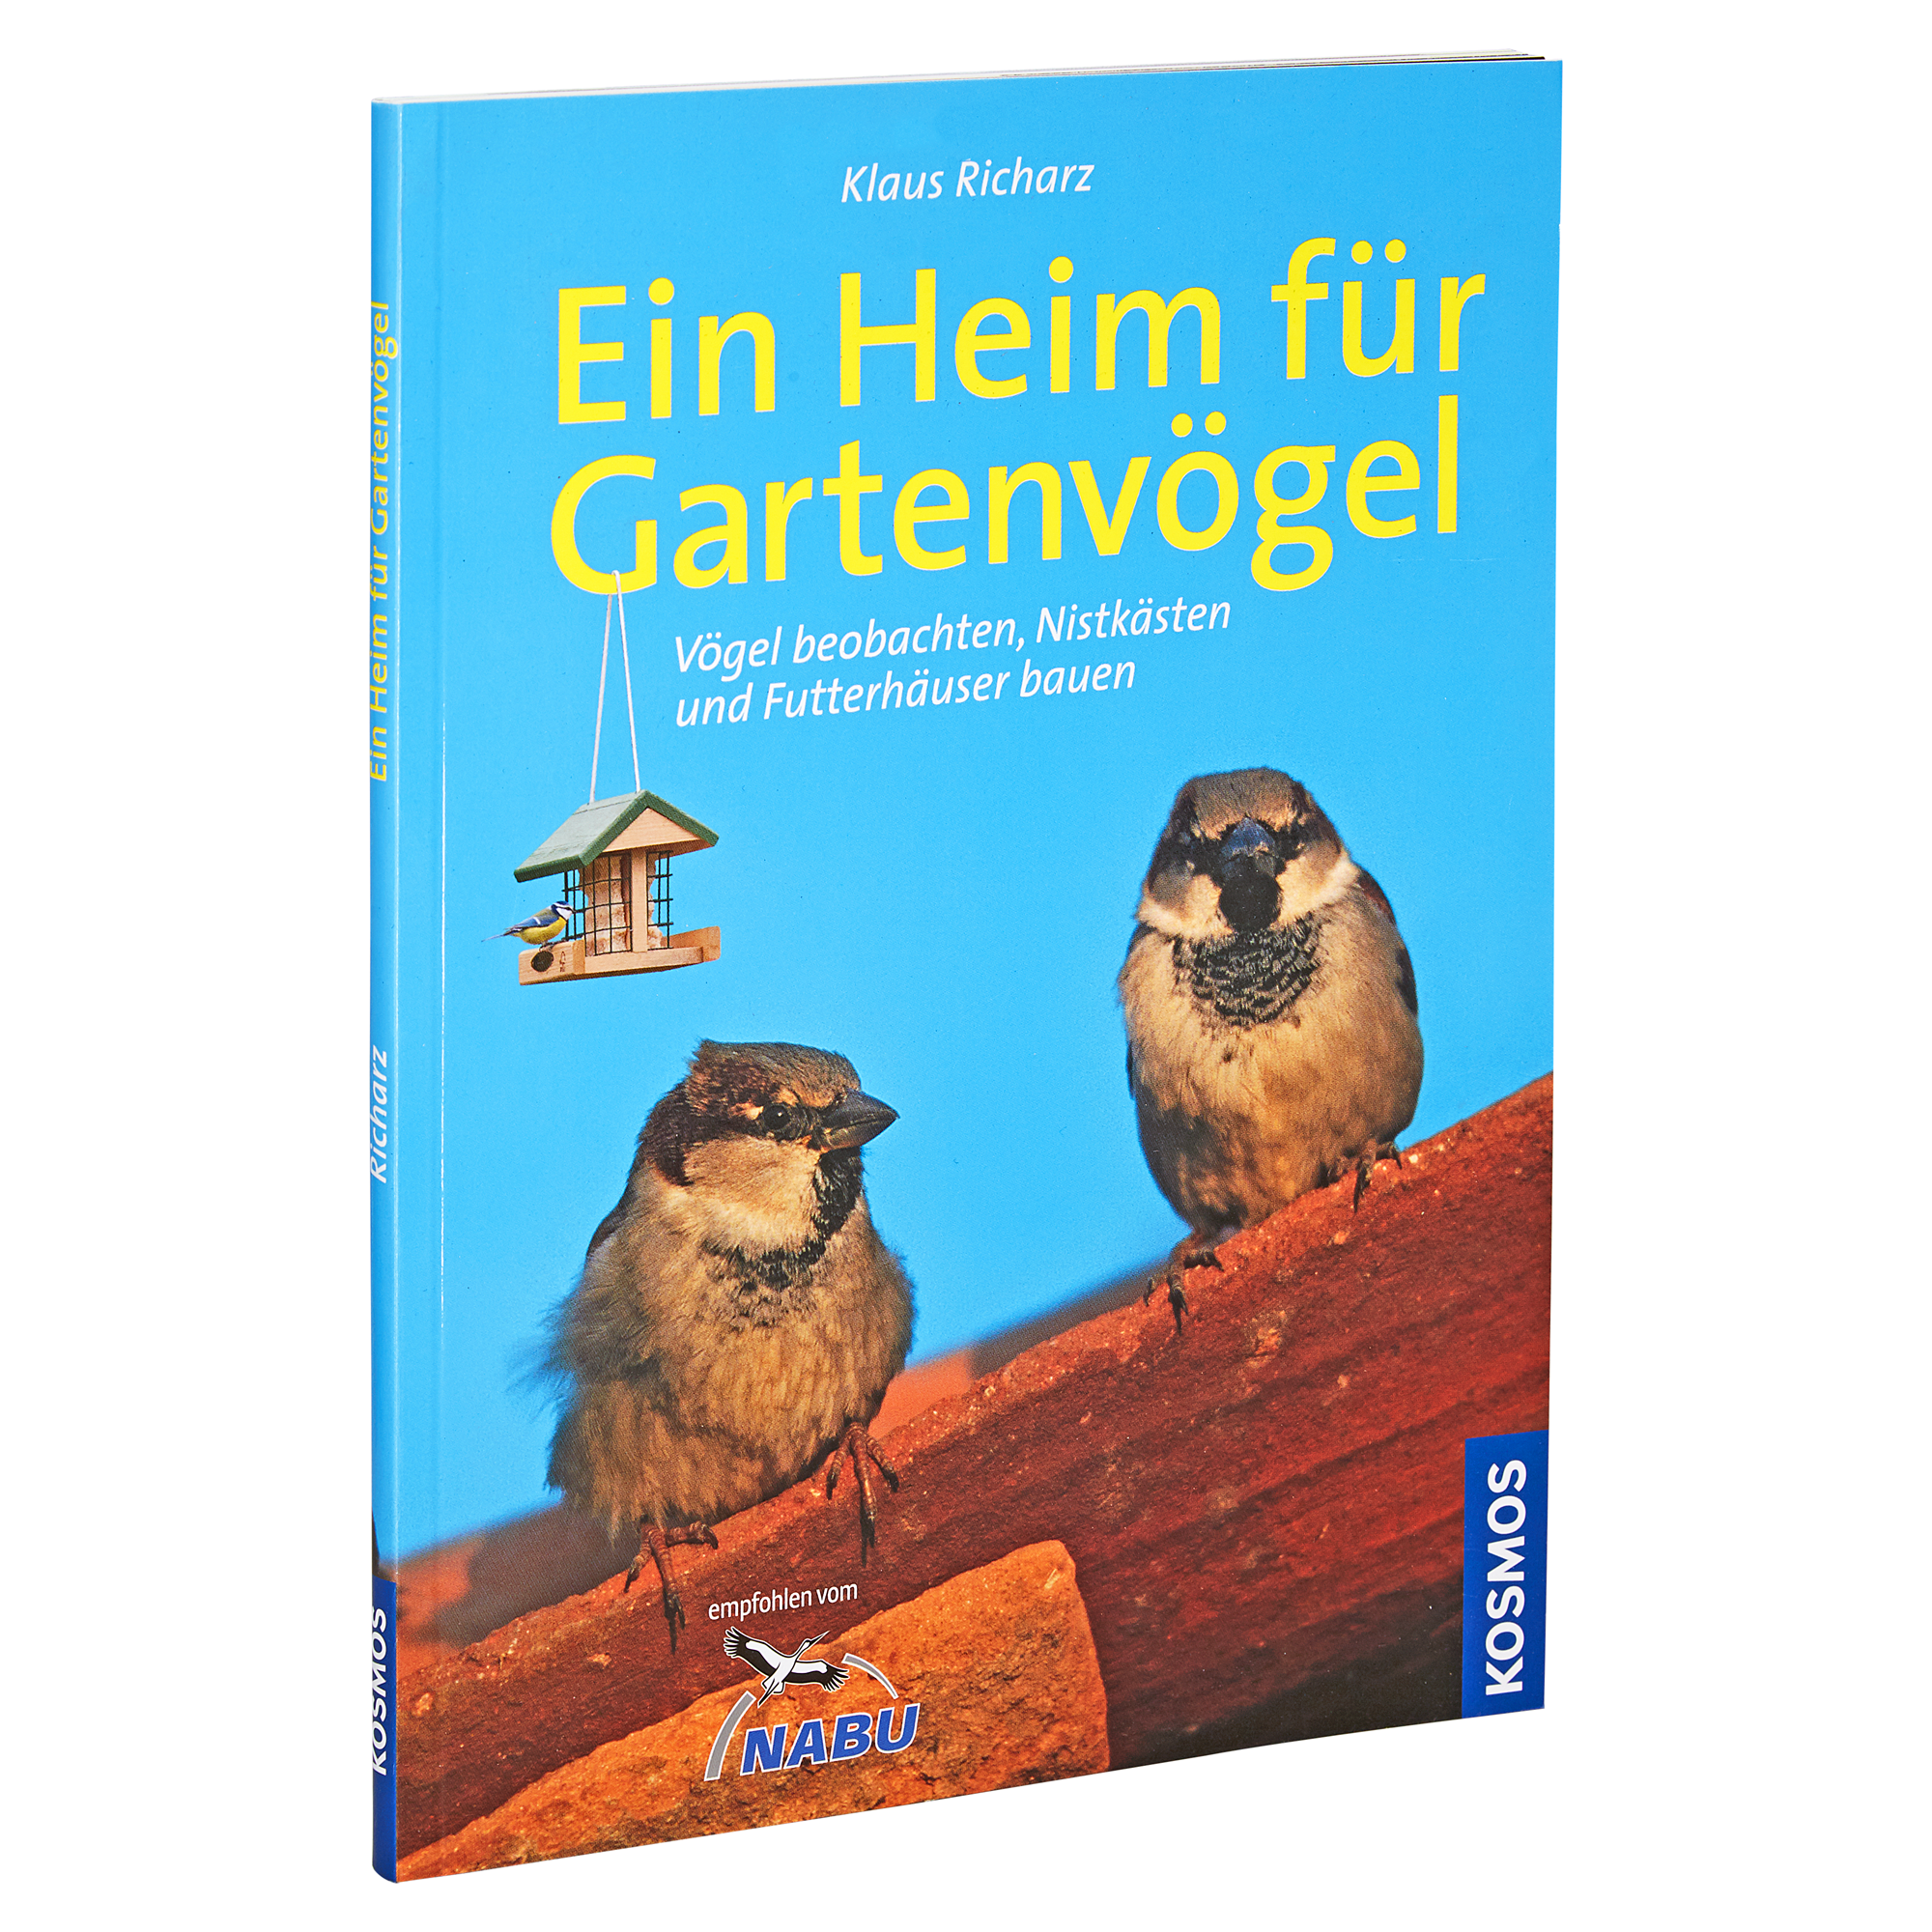 Kosmos-Tierratgeber "Ein Heim für Gartenvögel" PB 79 S. + product picture